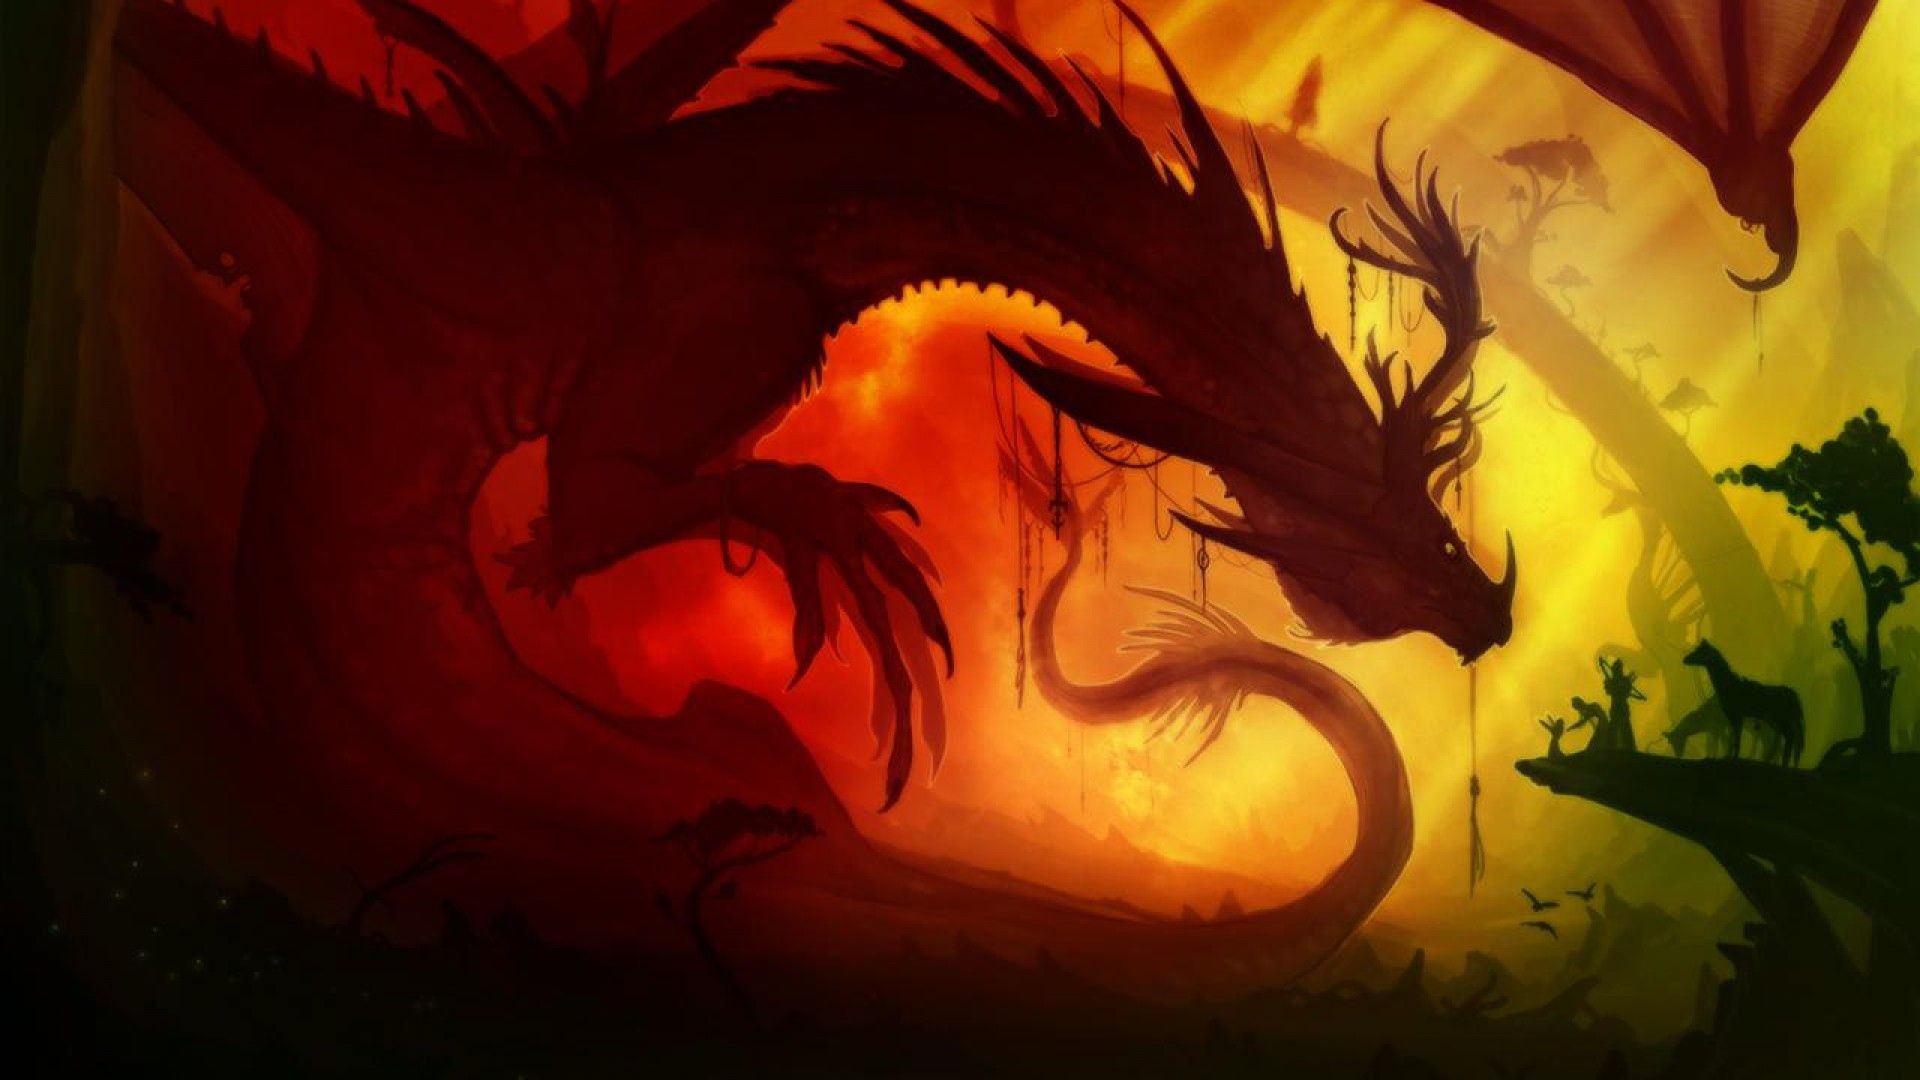 4k dragon wallpaper,continuar,cg artwork,personaje de ficción,ilustración,criatura mítica